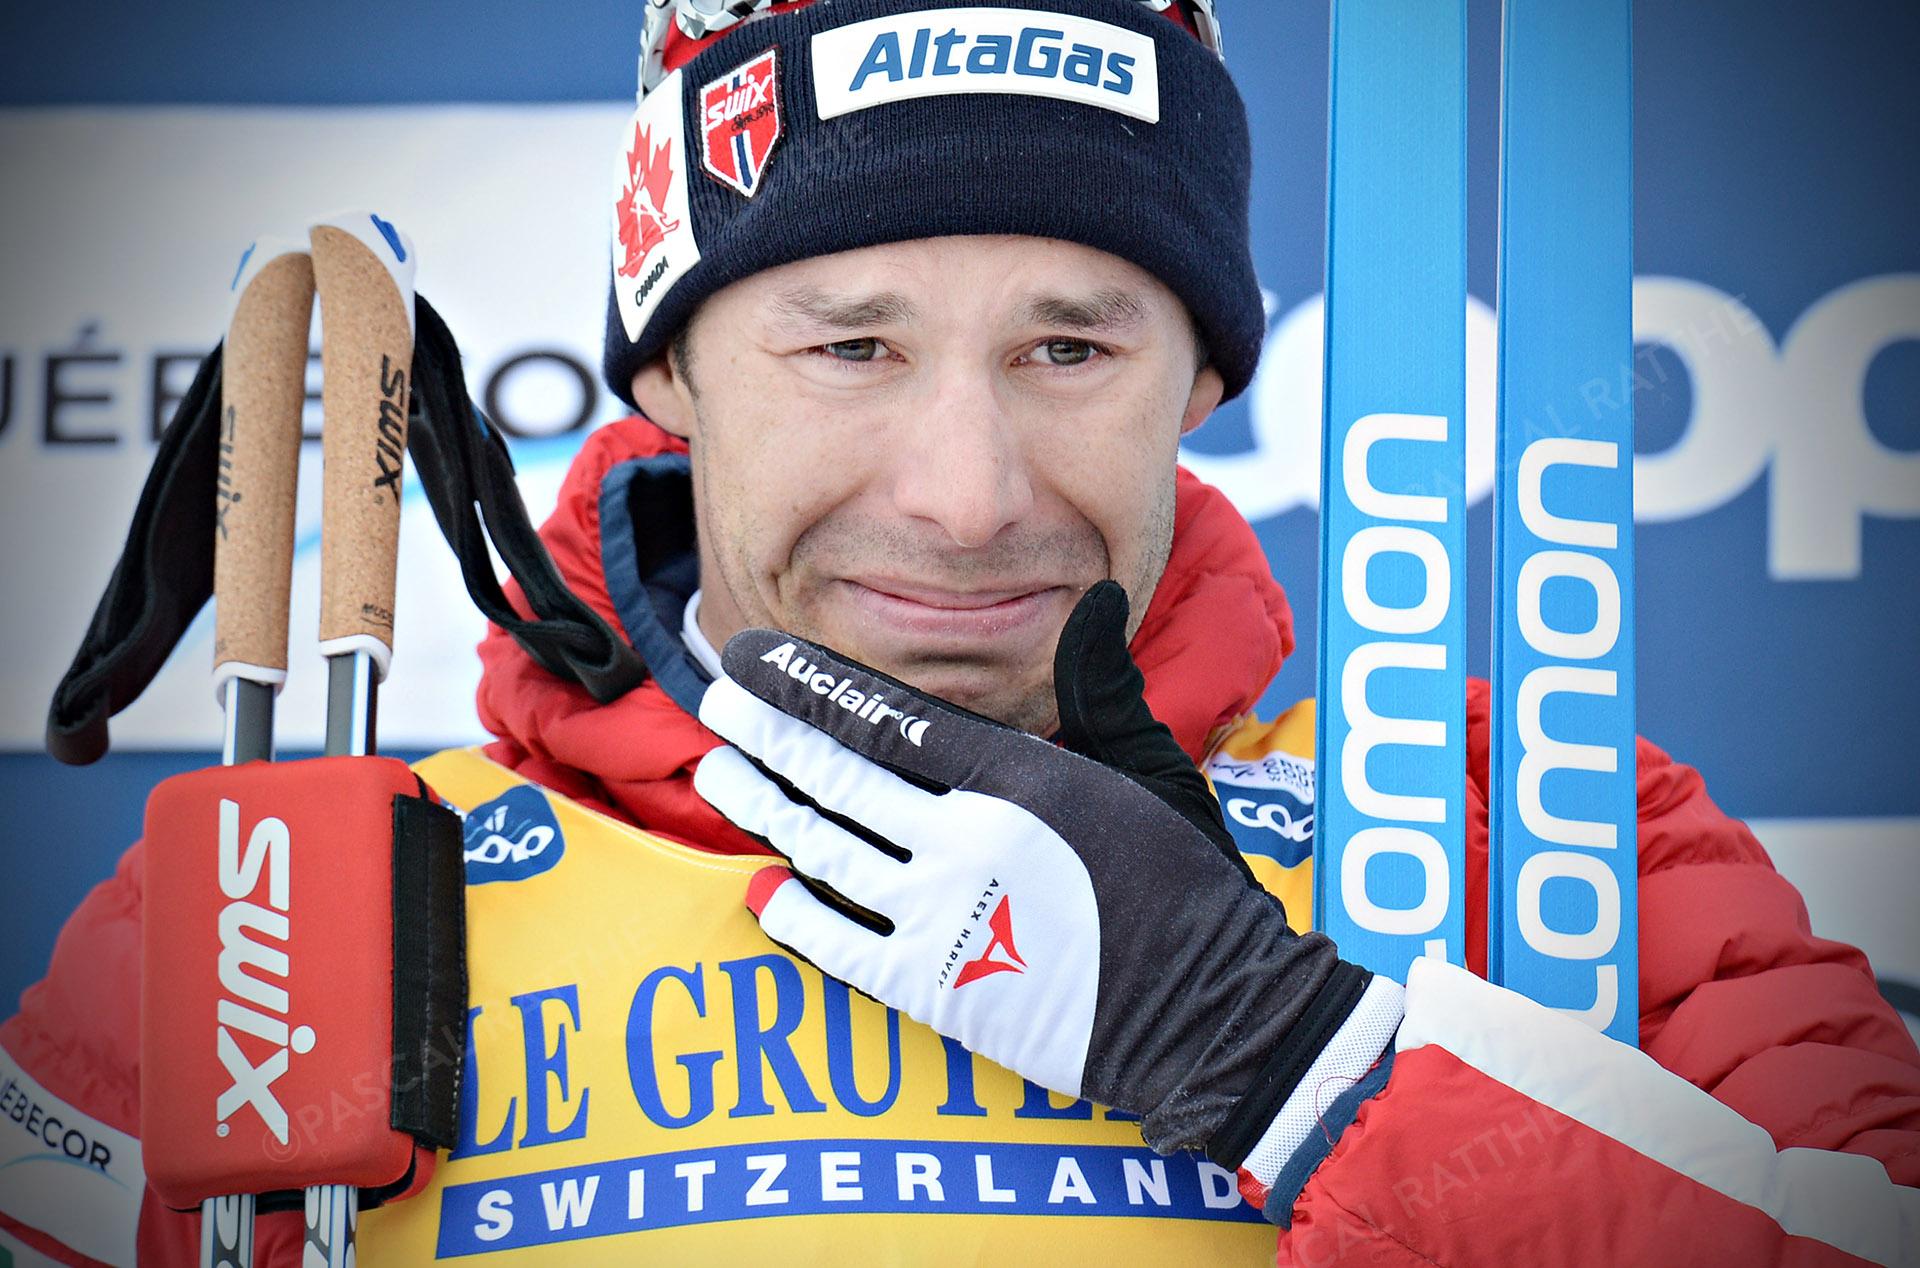 La finale de ski de fond à Québec, Alex Harvey termine en 2e position au style classique départ de masse